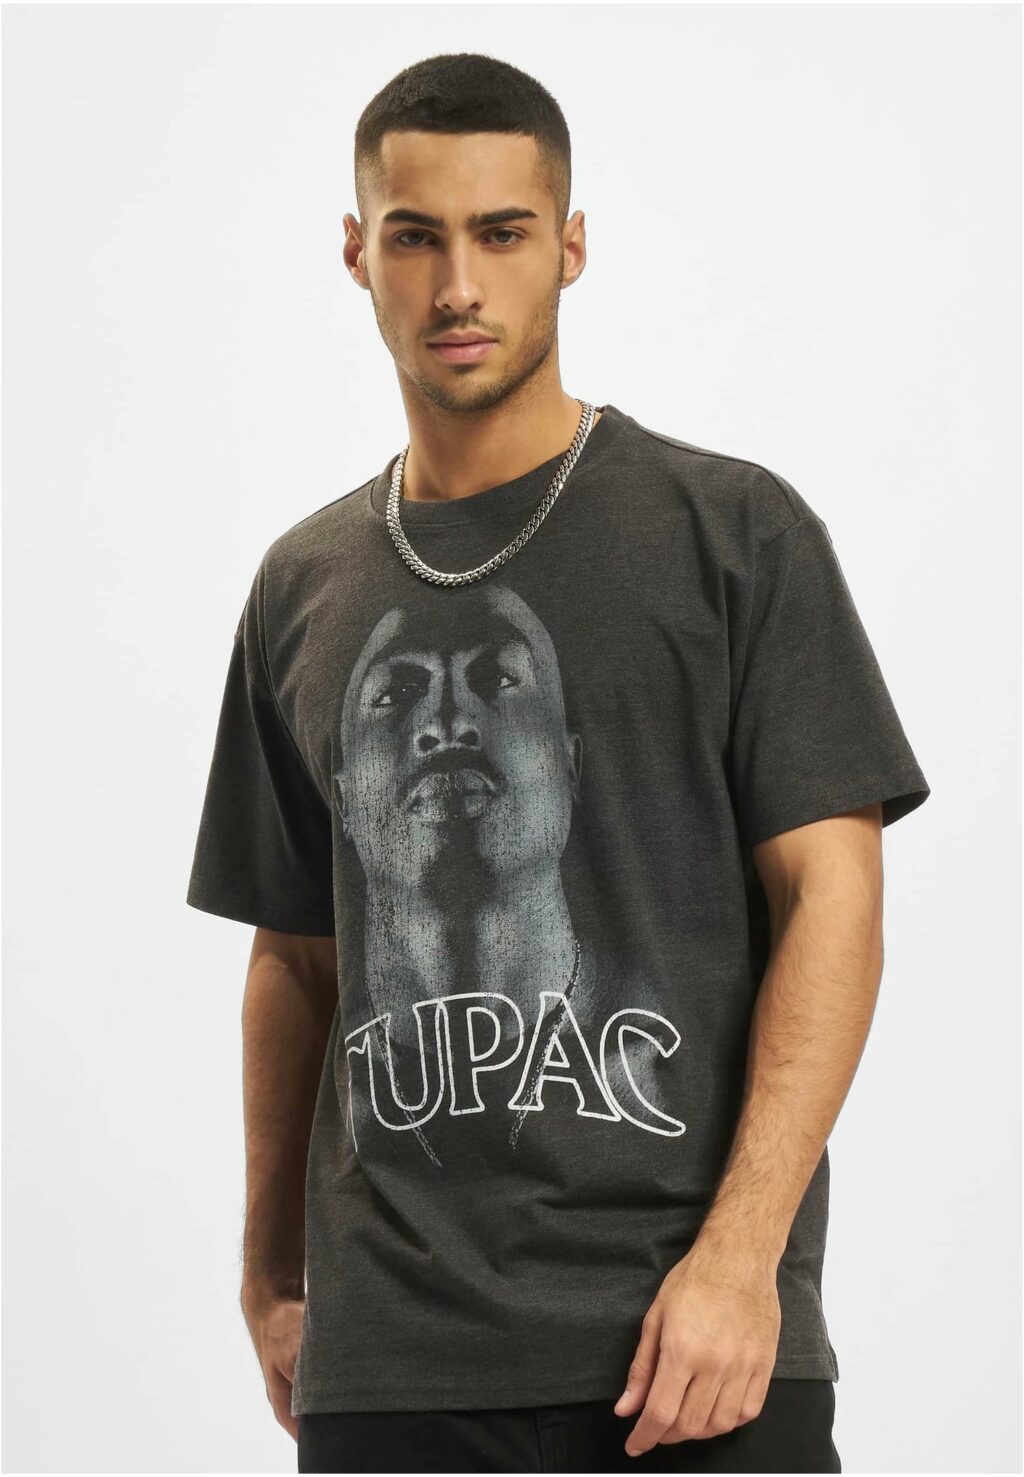 Tupac Up Oversize Tee charcoal MT1921